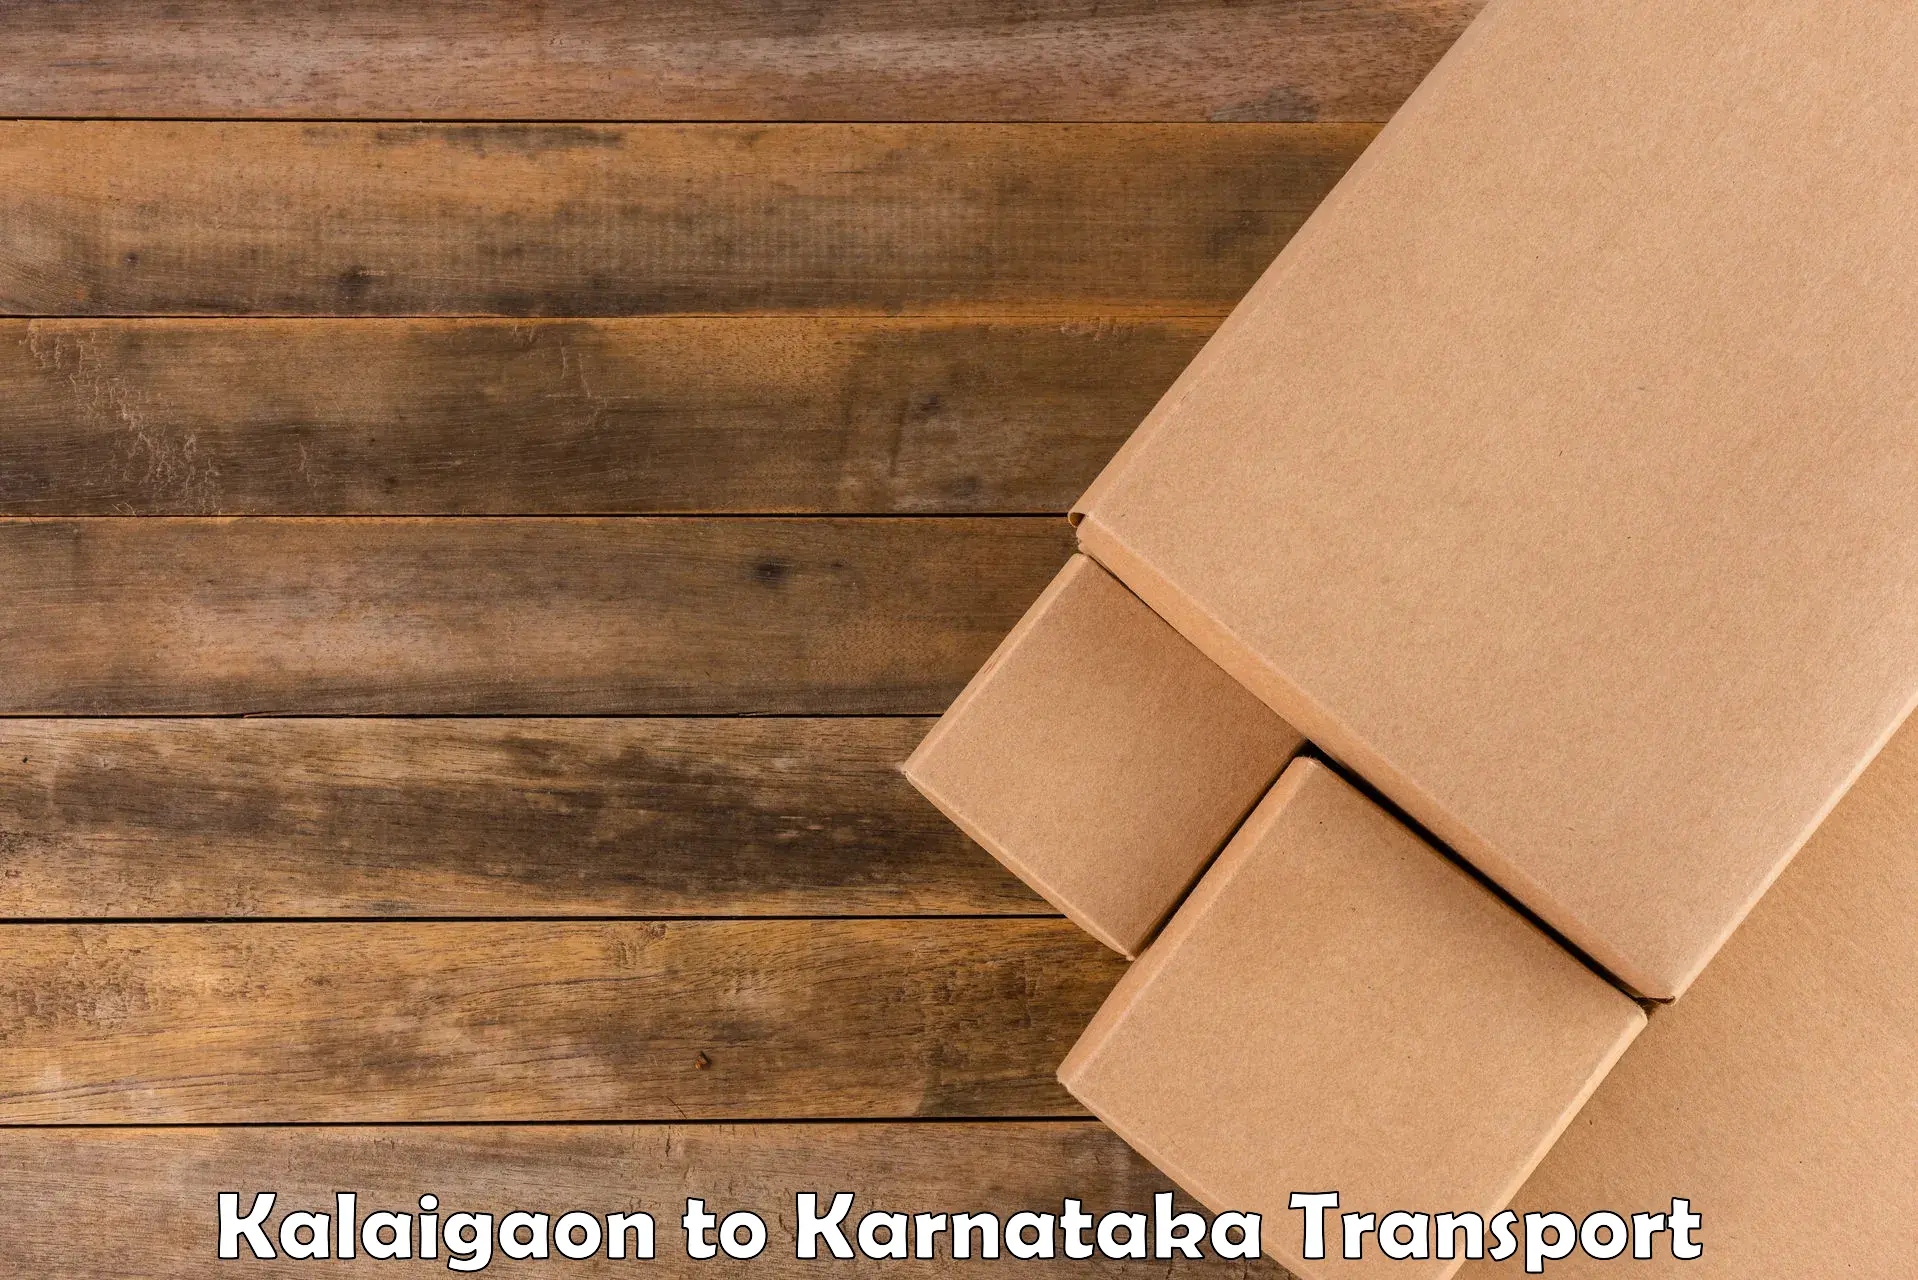 Cargo transport services Kalaigaon to Hunsur